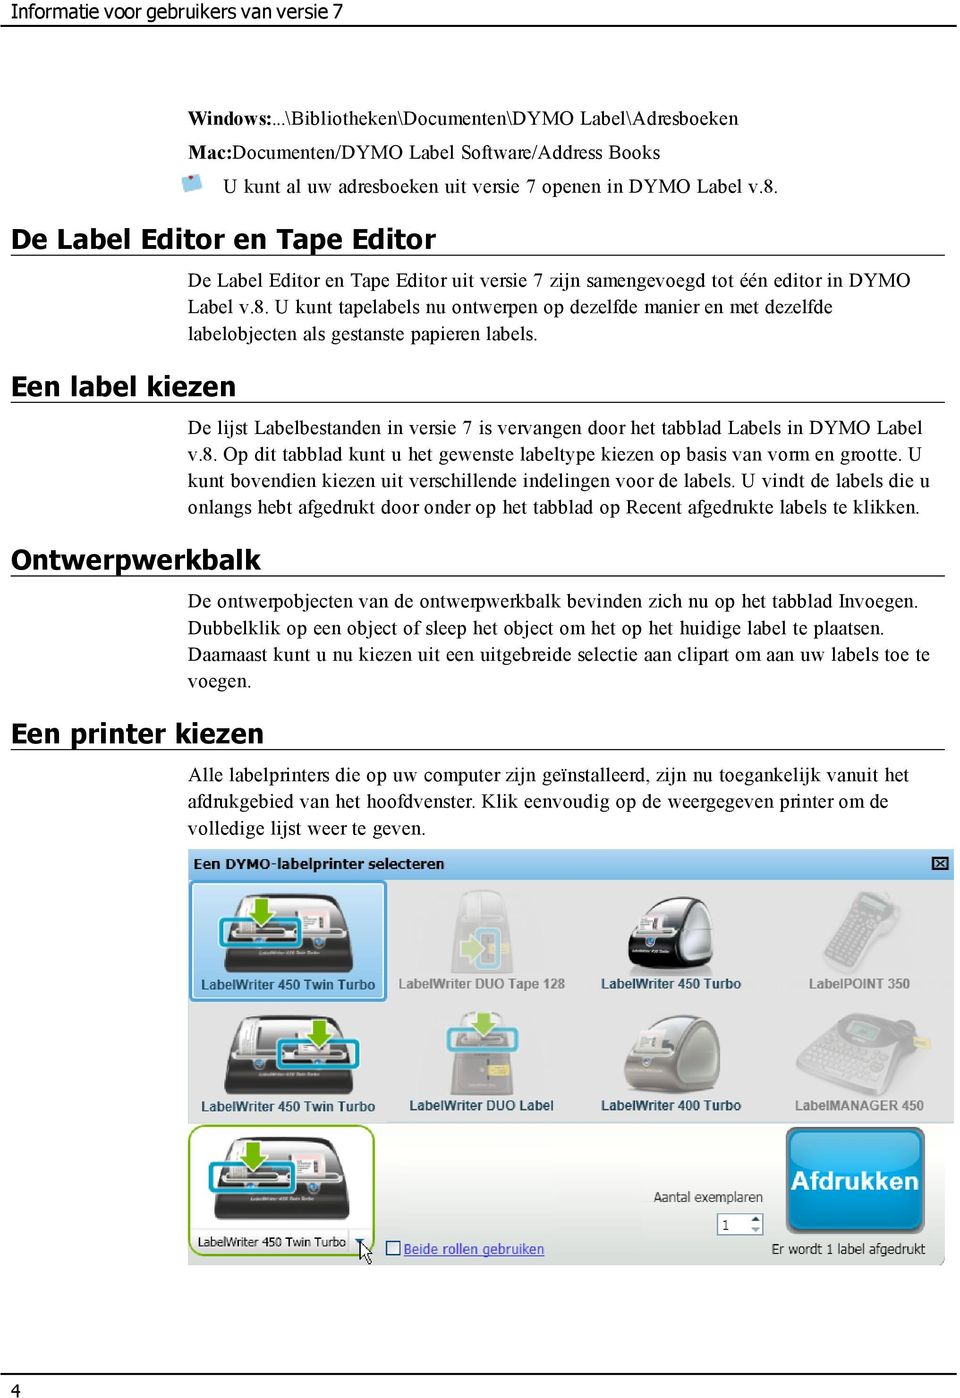 De Label Editor en Tape Editor Een label kiezen Ontwerpwerkbalk Een printer kiezen De Label Editor en Tape Editor uit versie 7 zijn samengevoegd tot één editor in DYMO Label v.8.